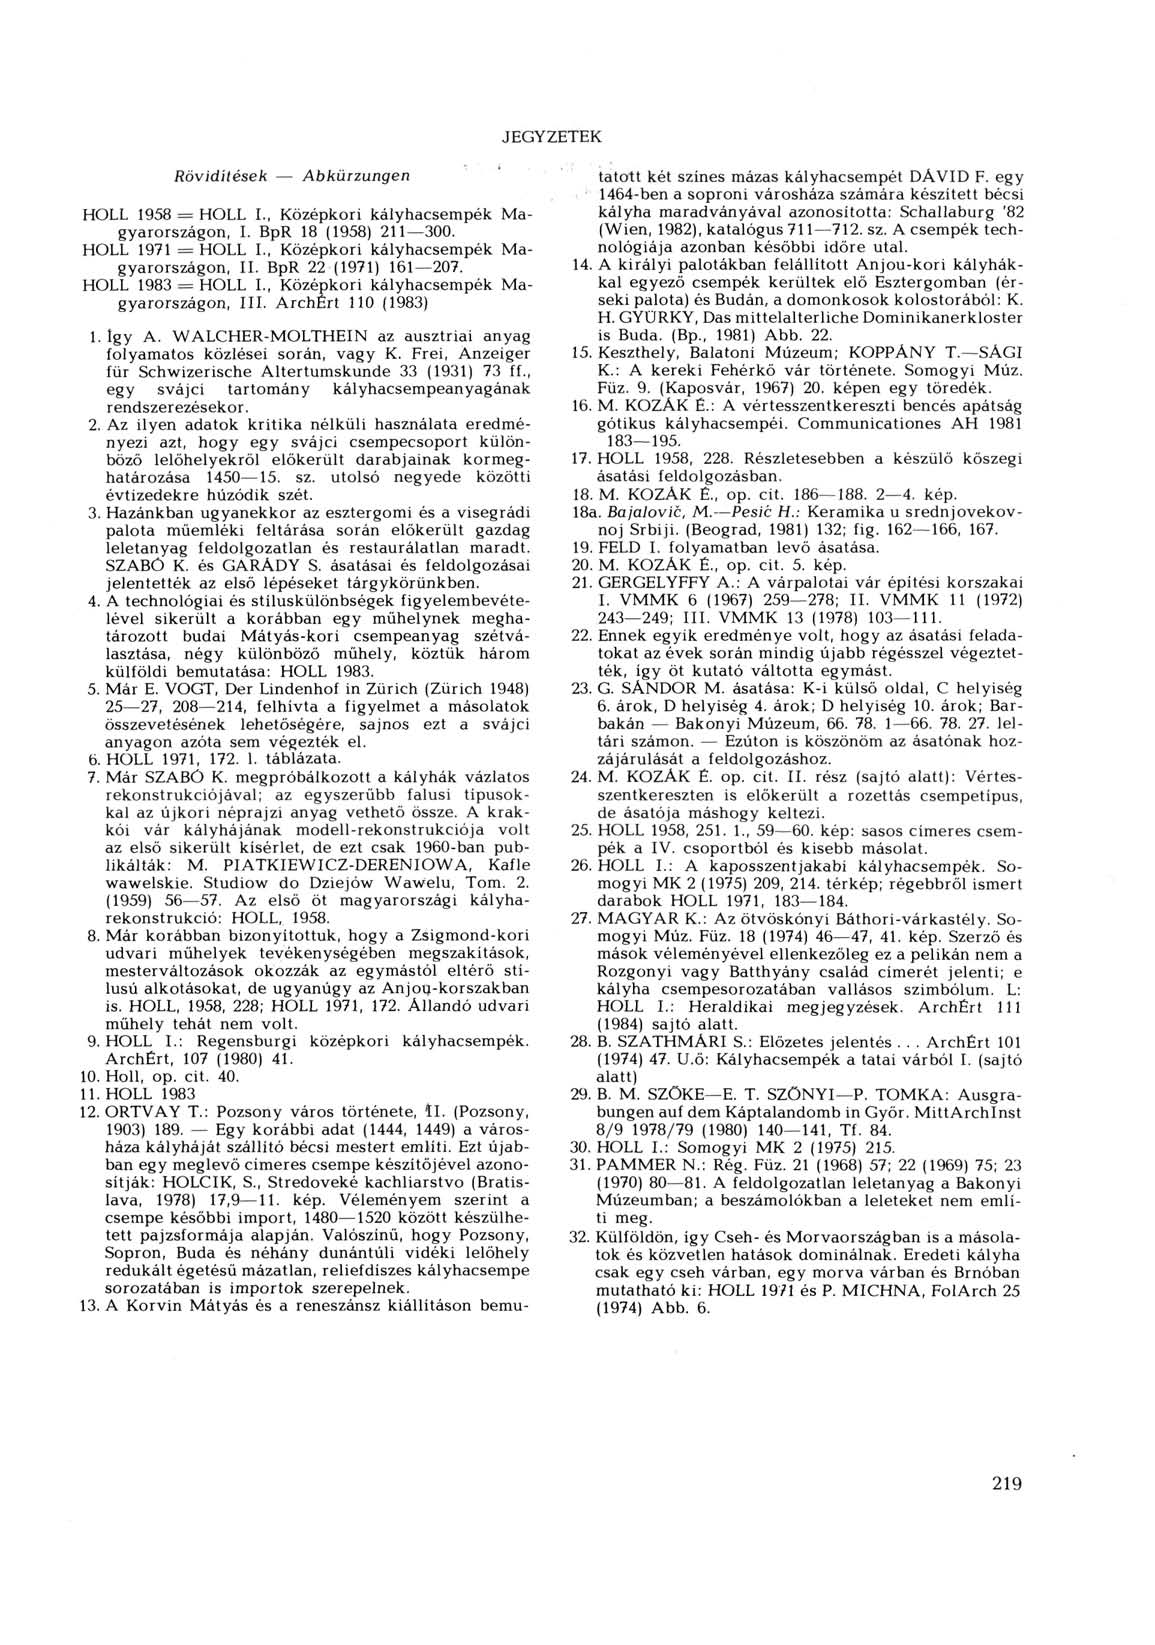 JEGYZETEK Rövidítések Abkürzungen HOLL 1958 = HOLL I., Középkori kályhacsempék Magyarországon, I. BpR 18 (1958) 211 300. HOLL 1971 = HOLL L, Középkori kályhacsempék Magyarországon, II.